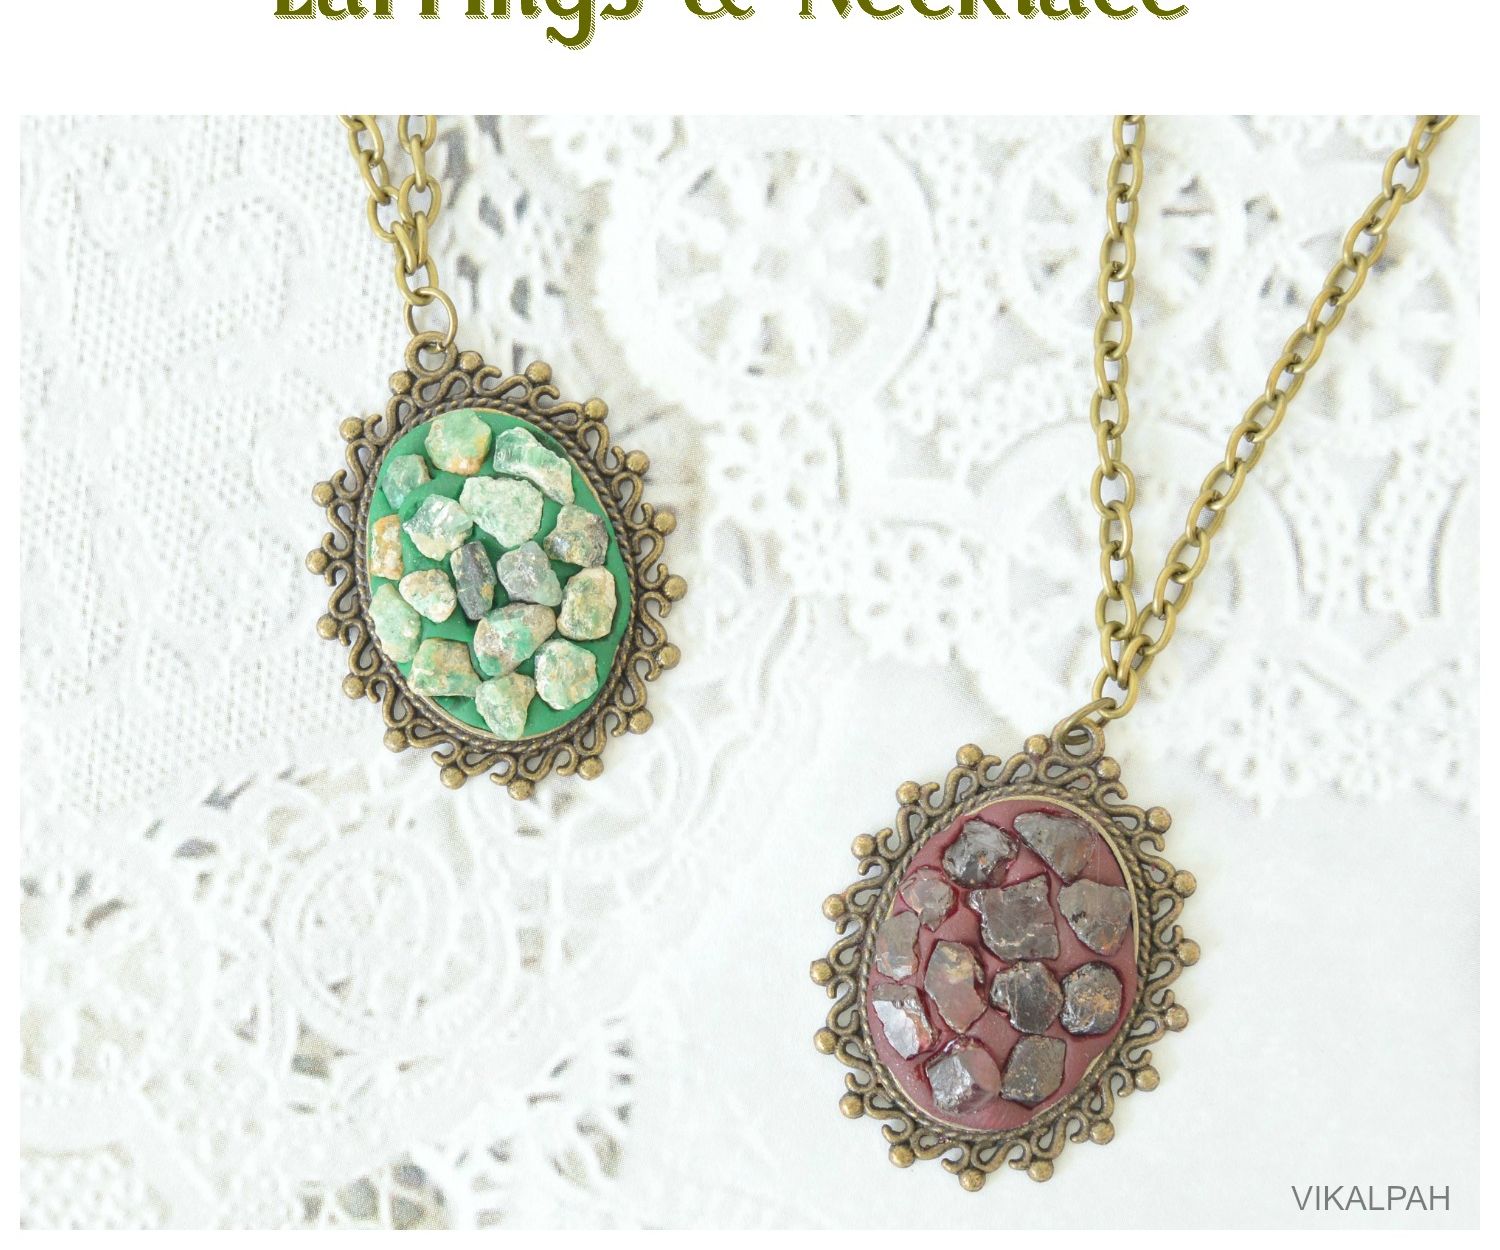 DIY Gemstone Jewelry - Earrings & Necklace